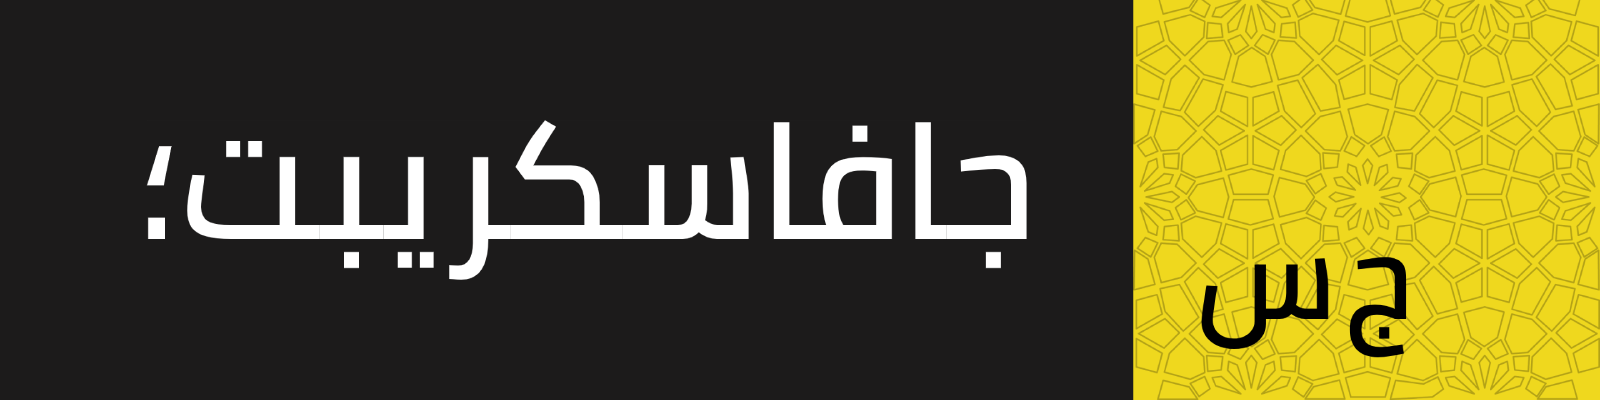 شريط أيقوني - جافاسكريب بالعربي